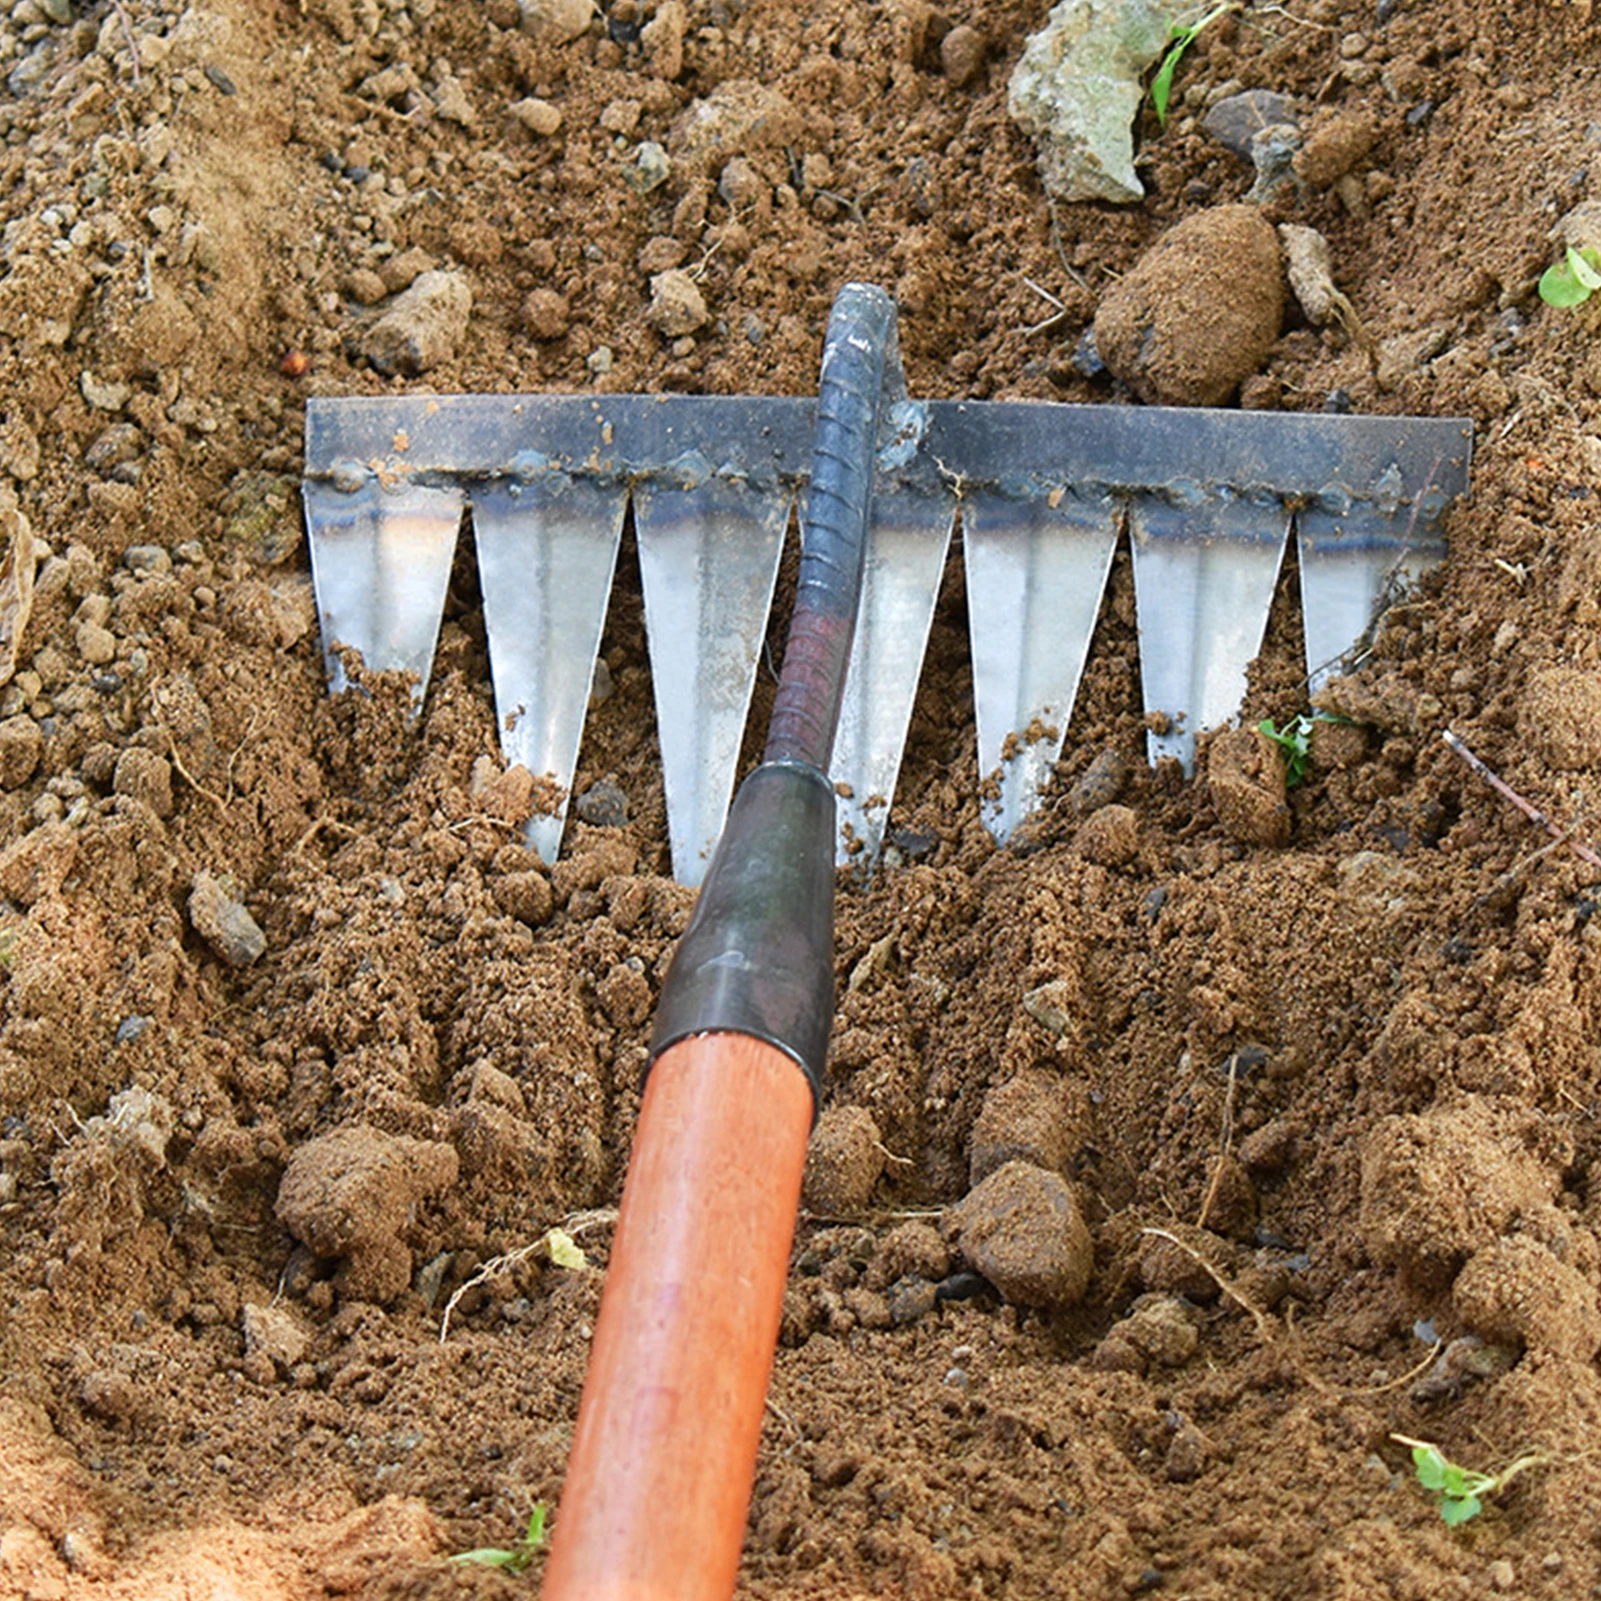 

Carbon Steel Garden Hand Rake Tines Rake Dethatching Weeding Acreage Rake Rock Gravel Root Garden Tools 4/5/6/7 Tines